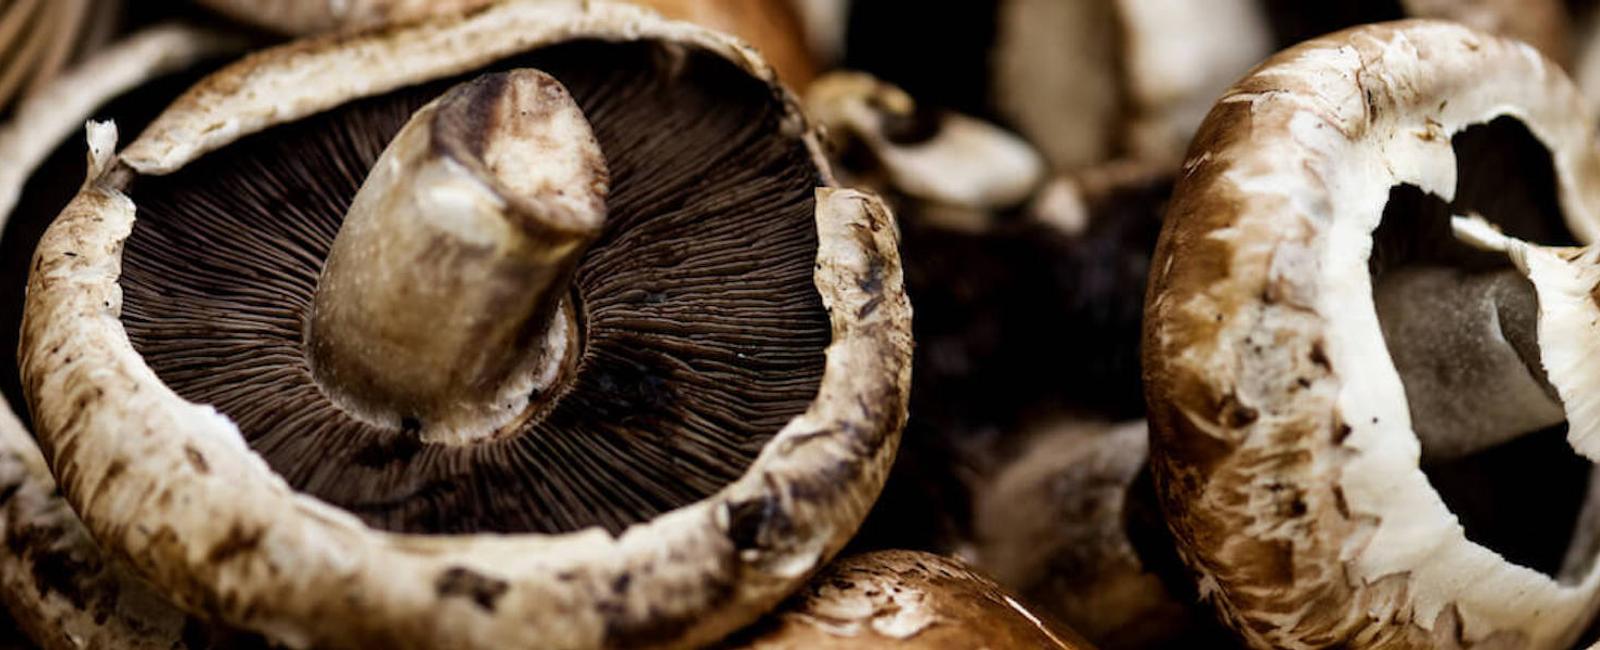 The Complete Guide to Portobello Mushrooms